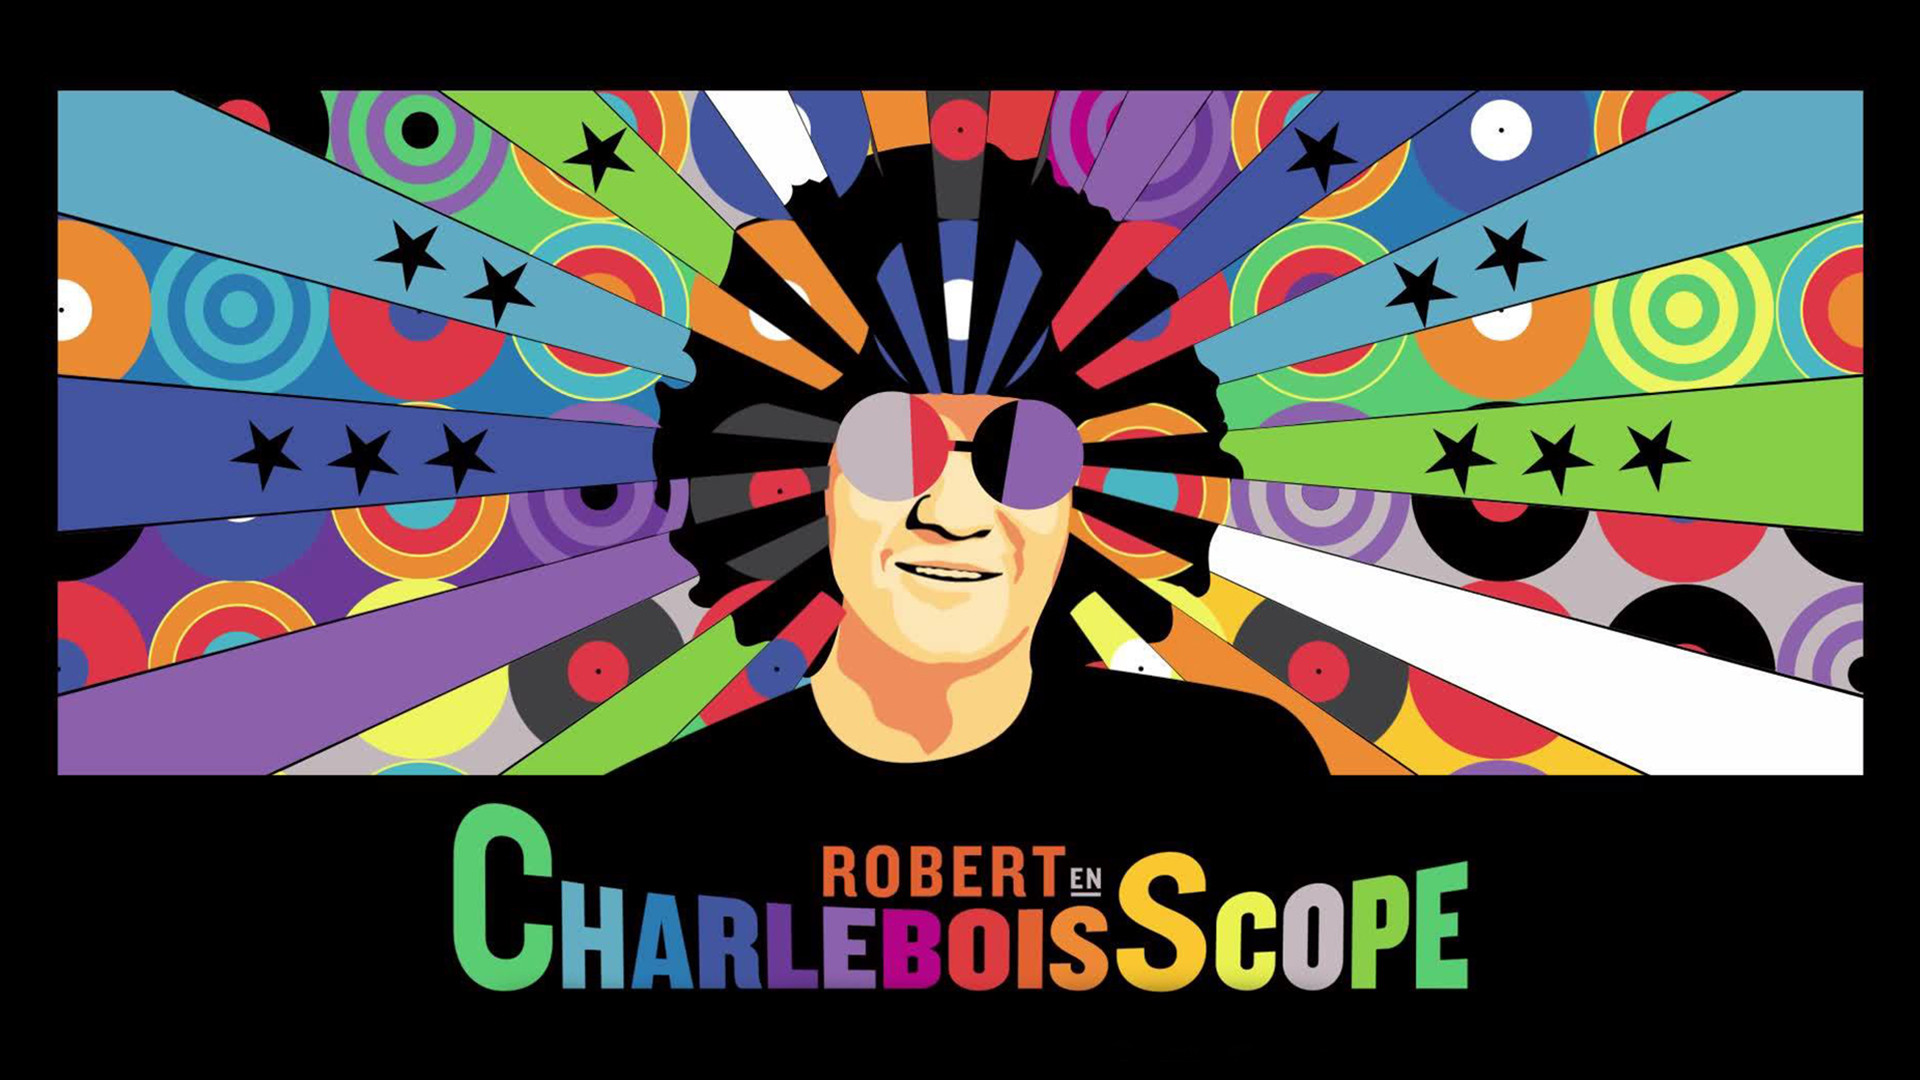 Robert en CharleboisScope